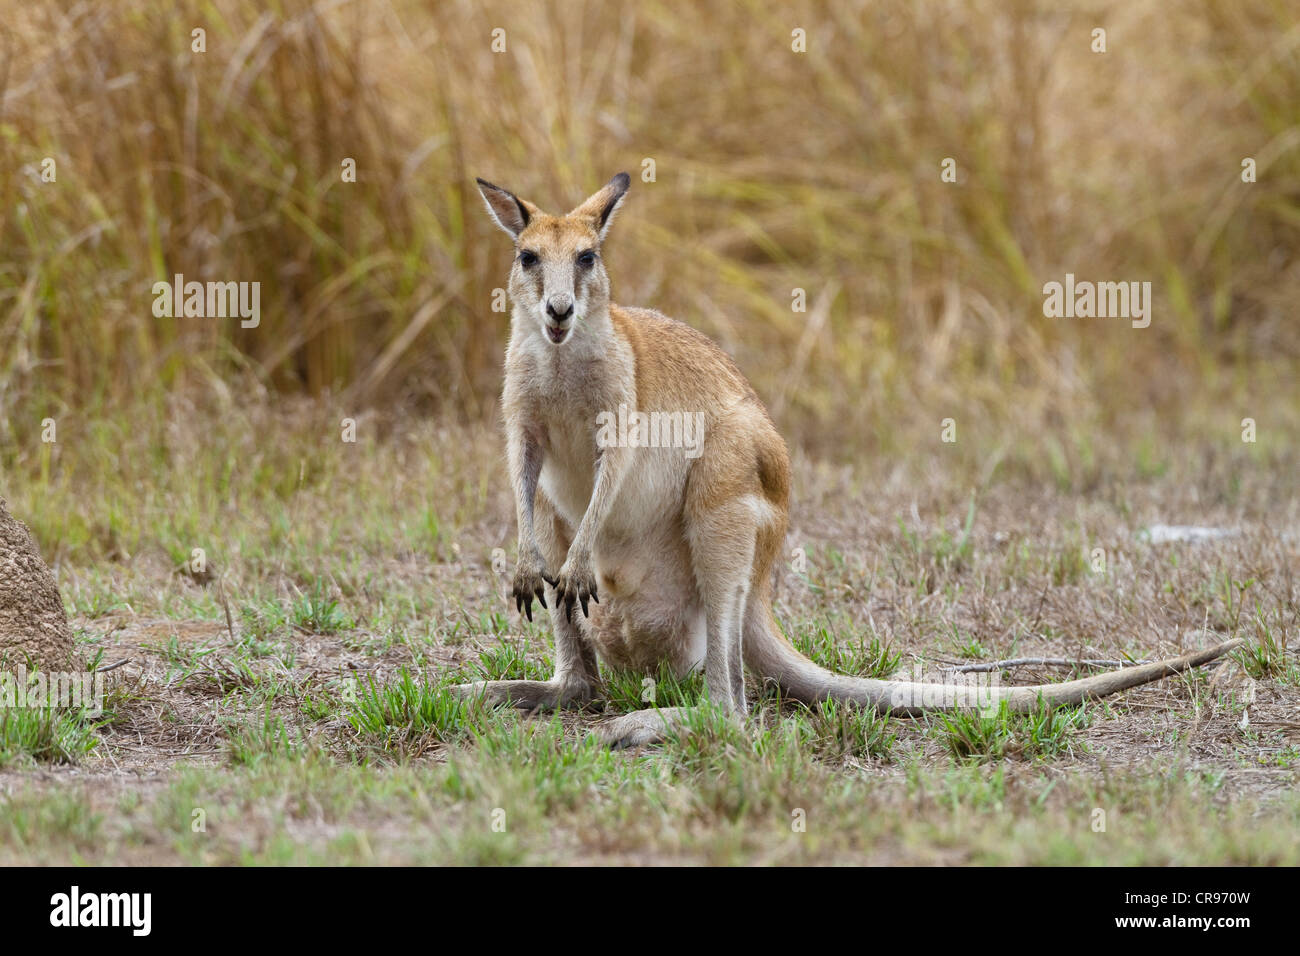 Agile Wallaby or Sandy Wallaby (Macropus agilis), Mareeba Wetlands, northern Queensland, Australia Stock Photo